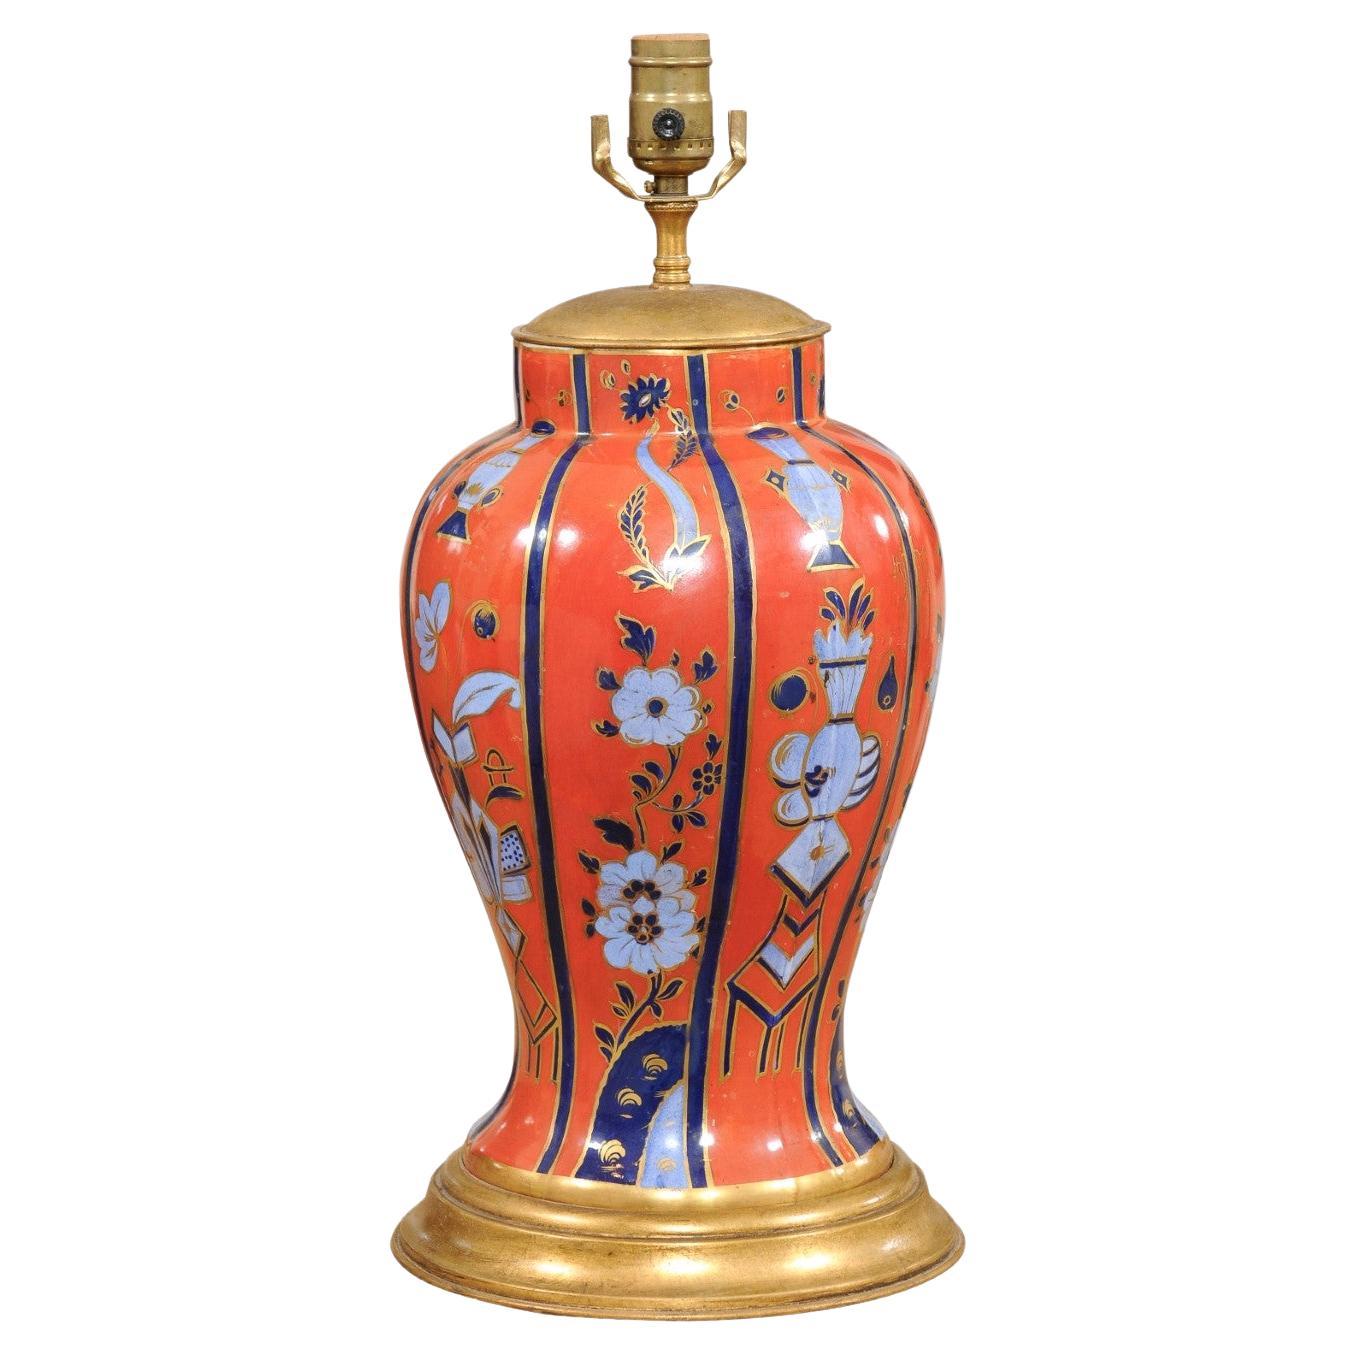 Englische Porzellanvase des 19. Jahrhunderts in Orange und Blau, verdrahtet als Lampe